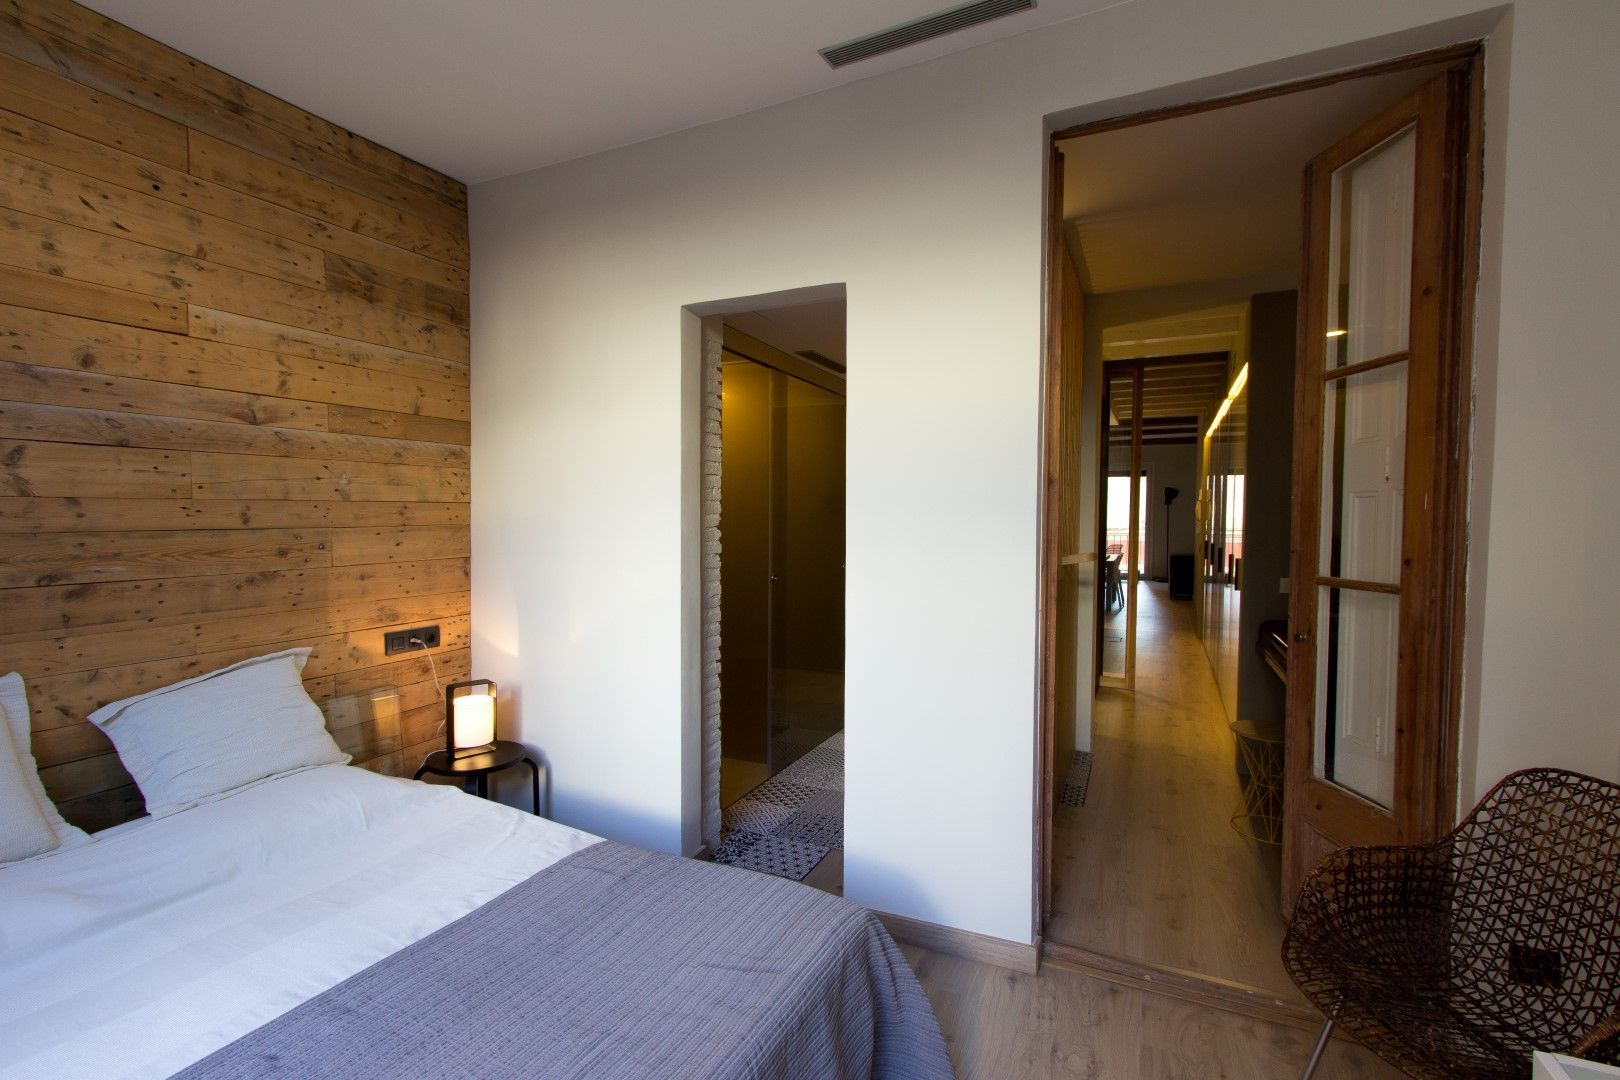 LOFT EN BARCELONA Proyecto de interiorismo para convertir un antiguo piso en un loft donde se valora la calidad del espacio, CREAPROJECTS. Interior design. CREAPROJECTS. Interior design. غرفة نوم